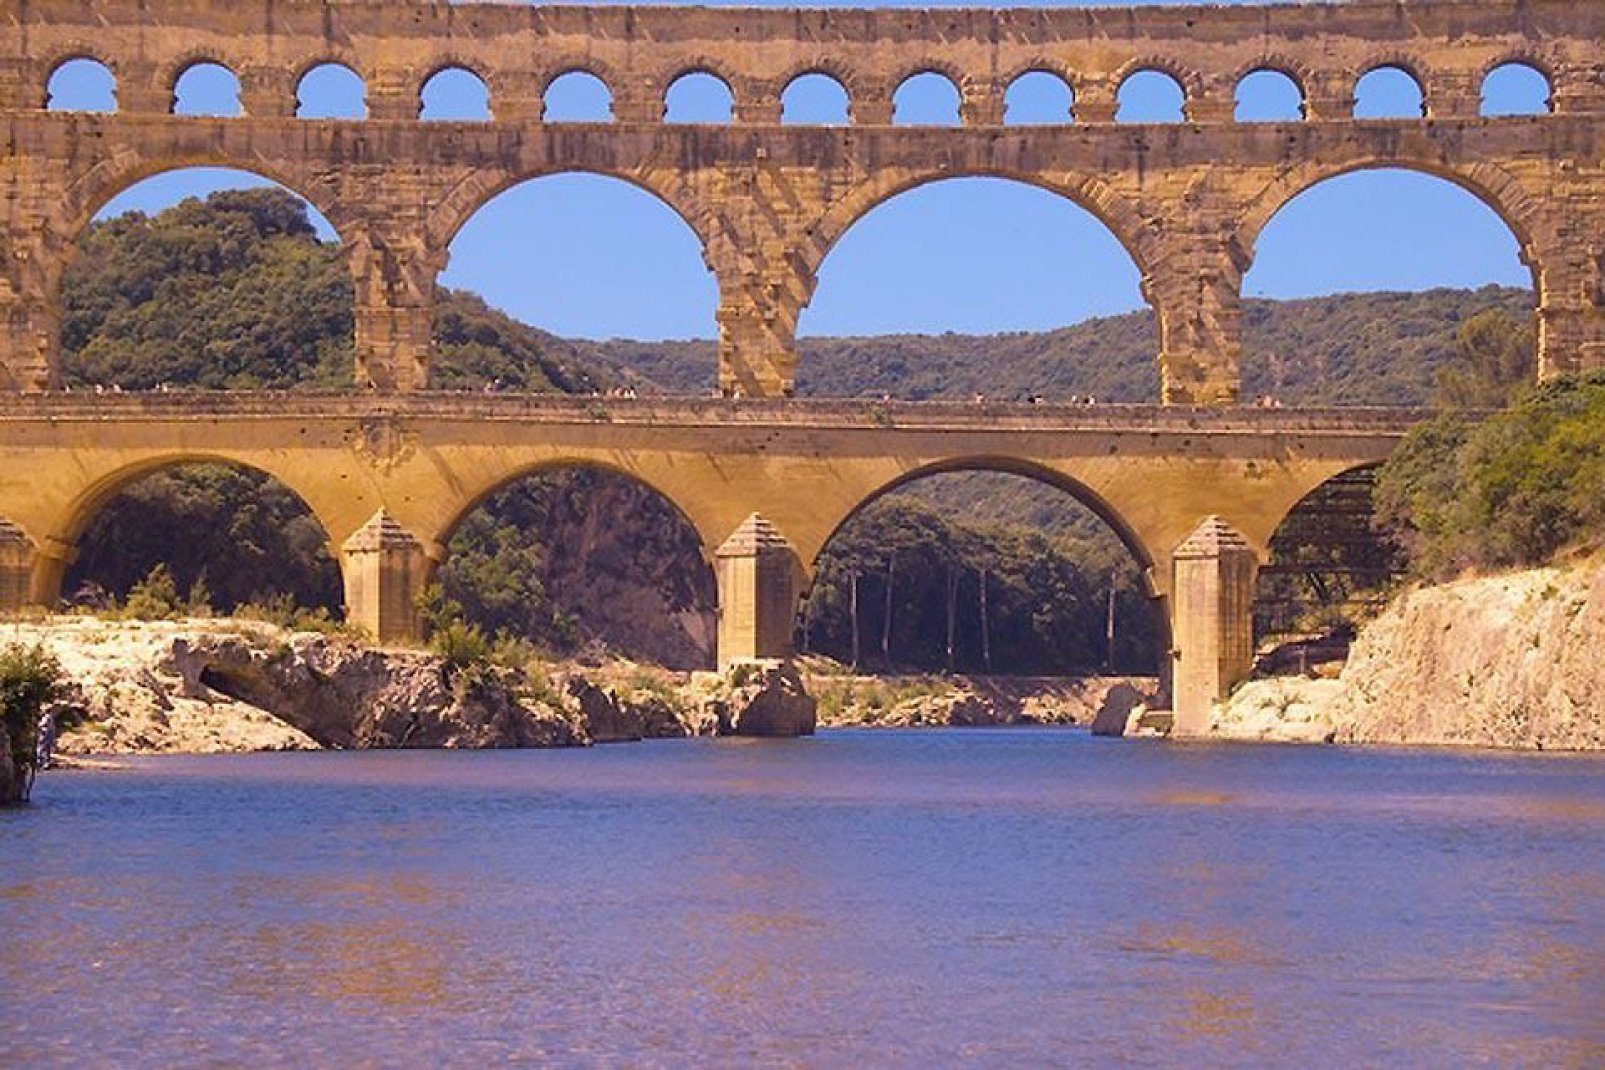 Il ponte-acquedotto risale all'epoca romana. È composto da tre livelli, il più alto culmina a 7,40 m.